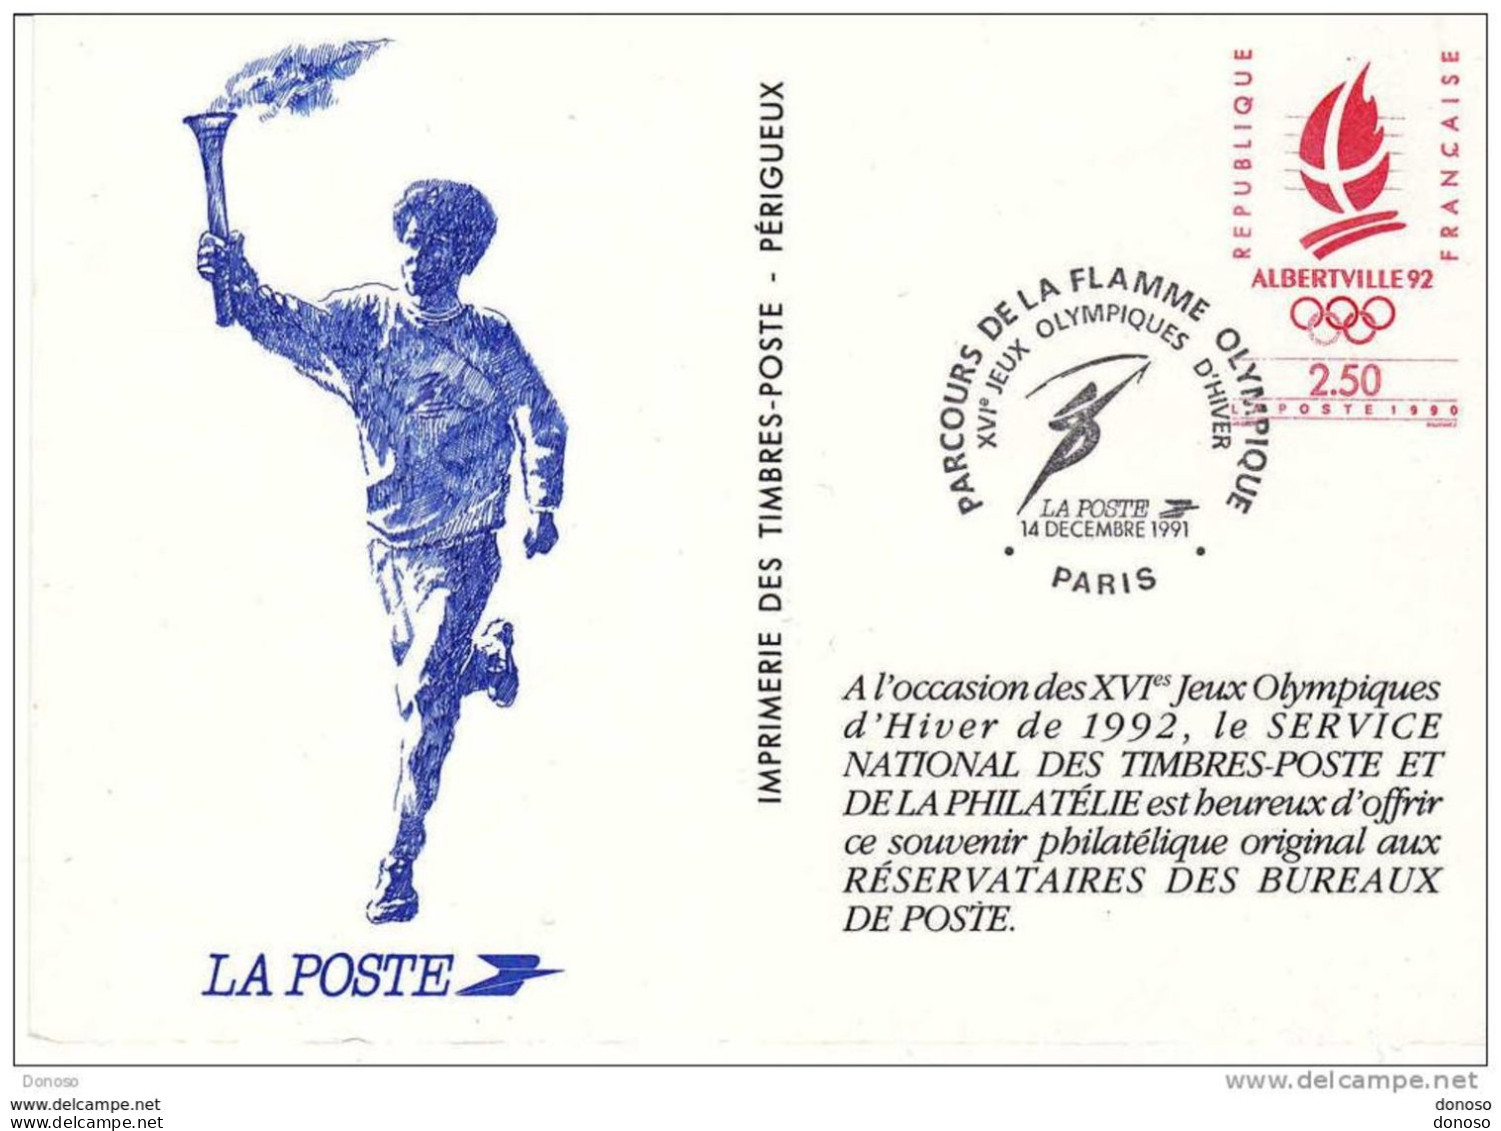 FRANCE 1992 JEUX OLYMPIQUES D'ALBERTVILLE, Souvenir Philatélique - Documents Of Postal Services